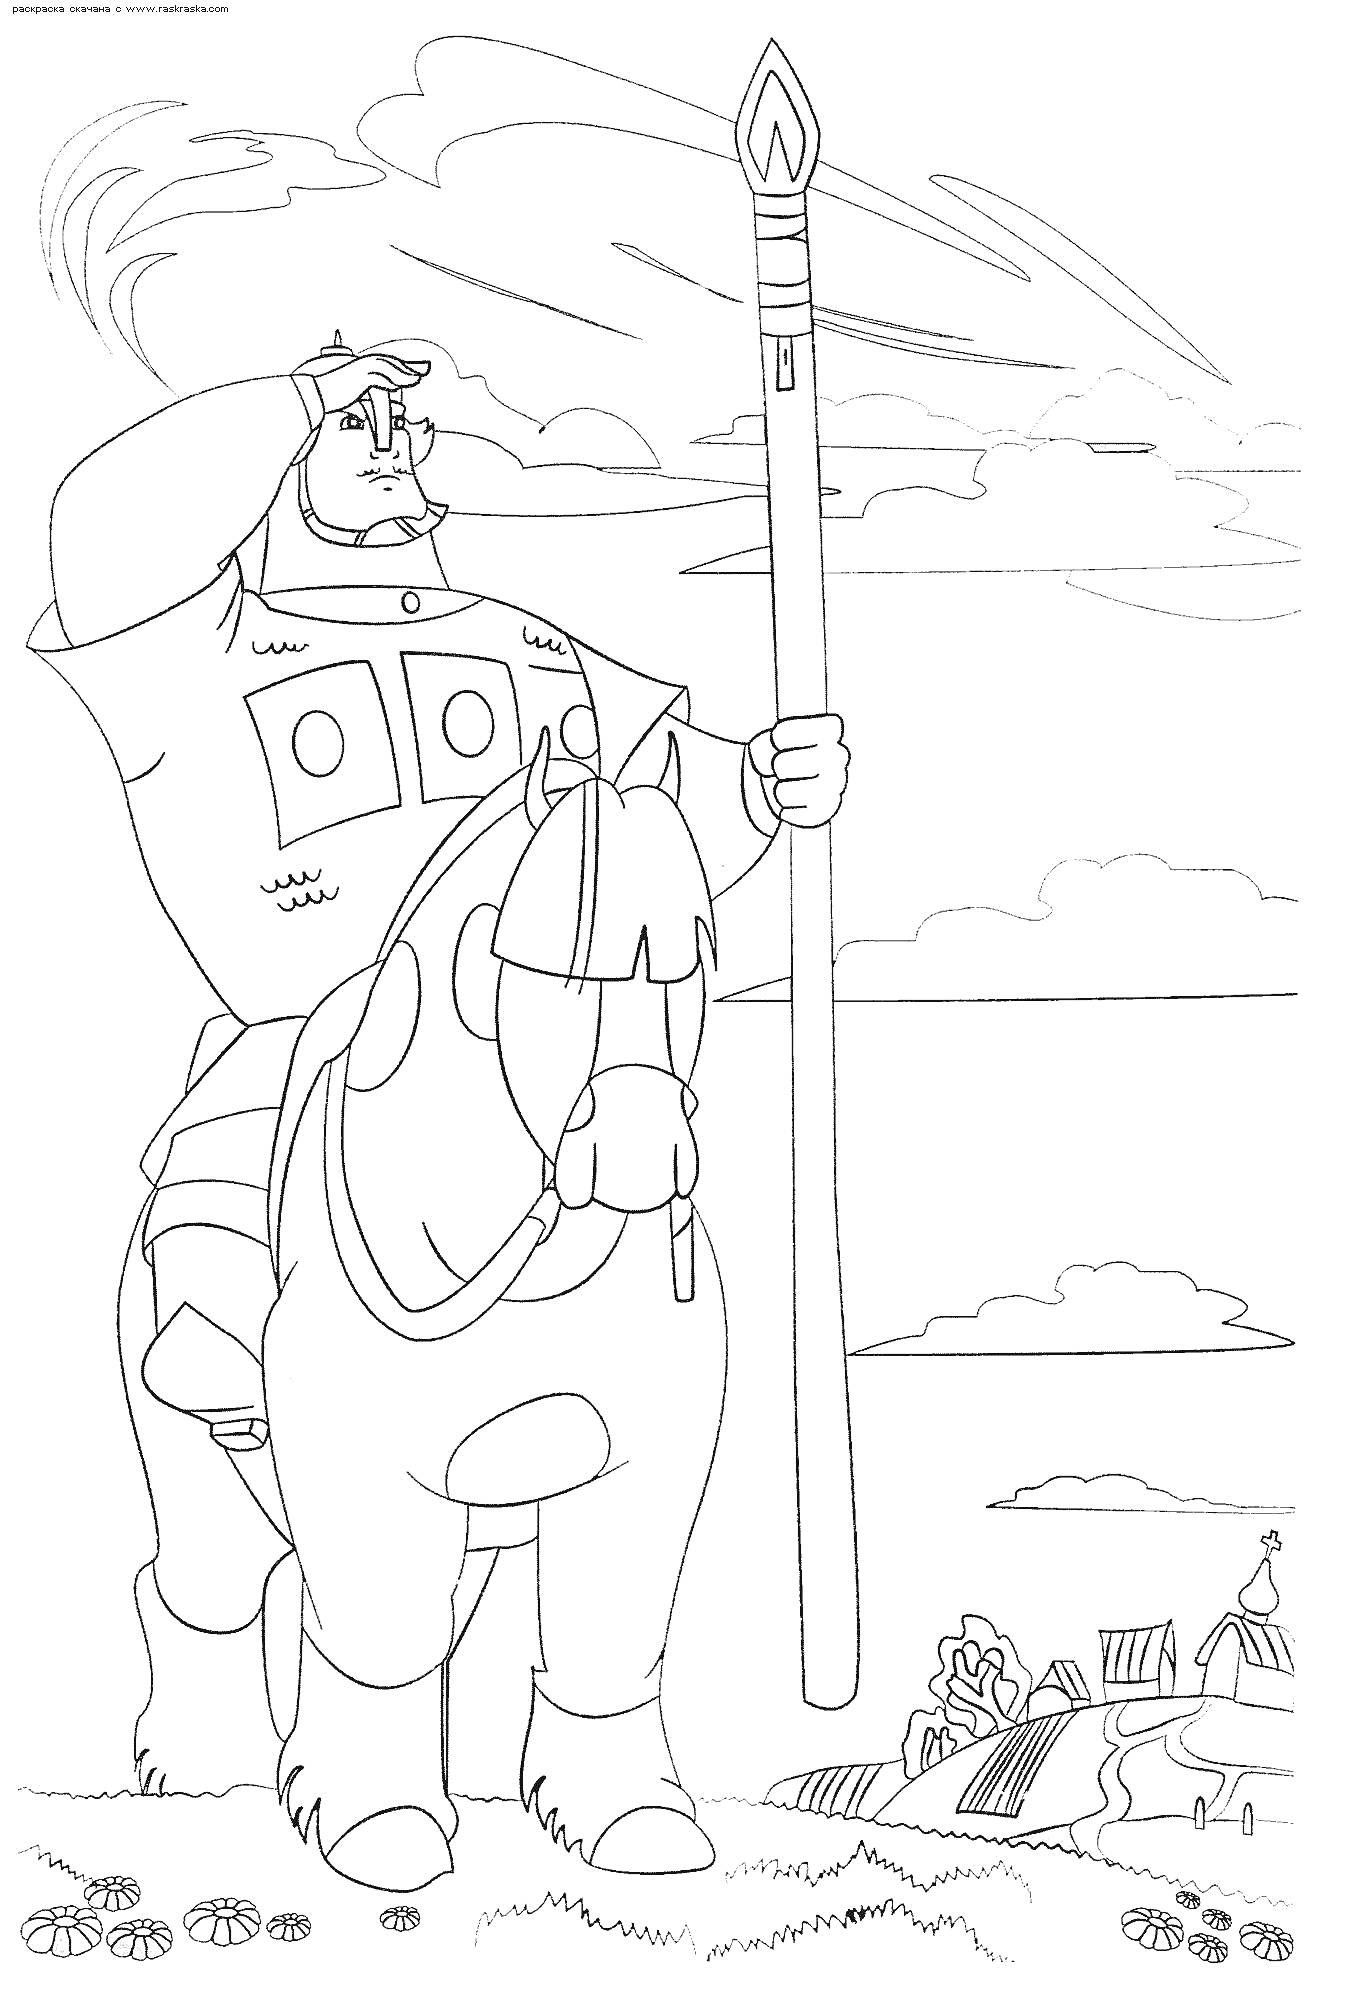 Богатырь на коне с копьем на фоне деревенского пейзажа, гор и облаков